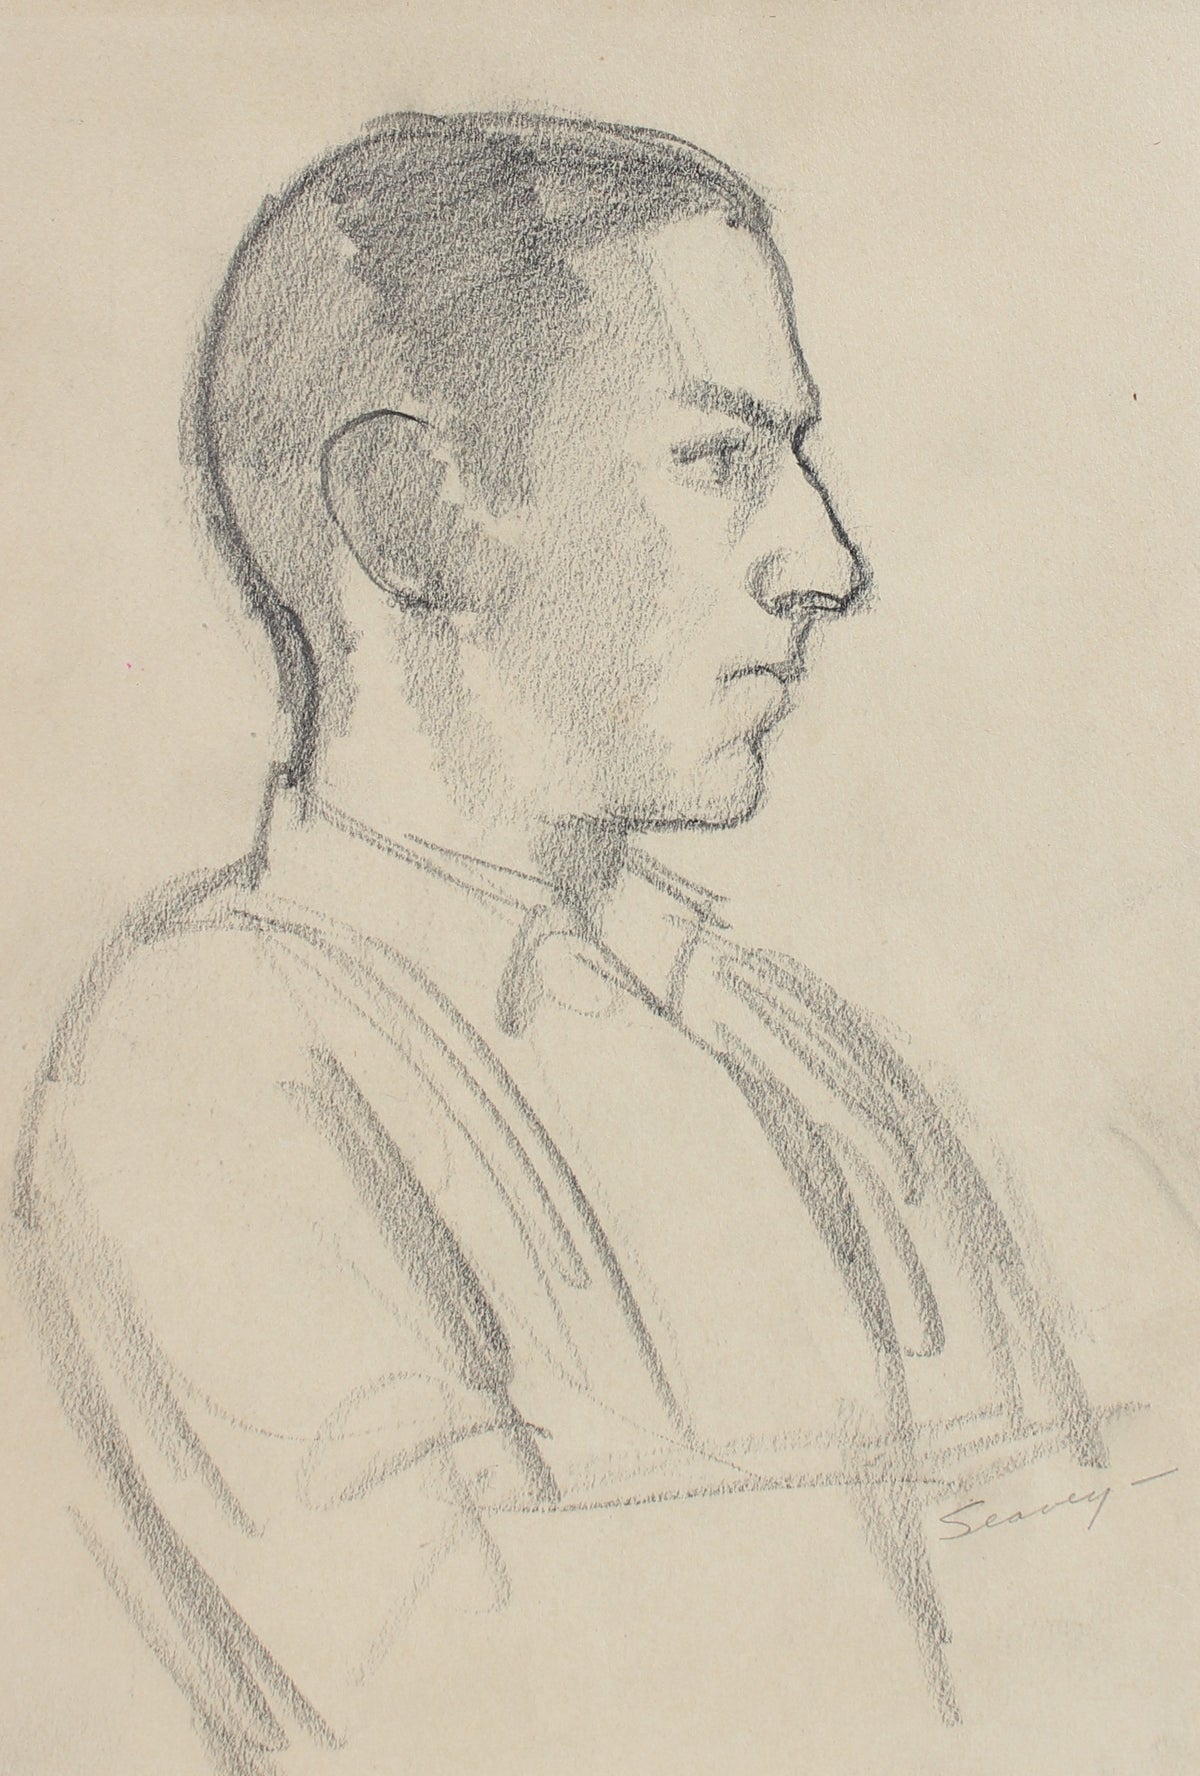 Introspective Male Profile &lt;br&gt;1928-1936 Charcoal &lt;br&gt;&lt;br&gt;#9564